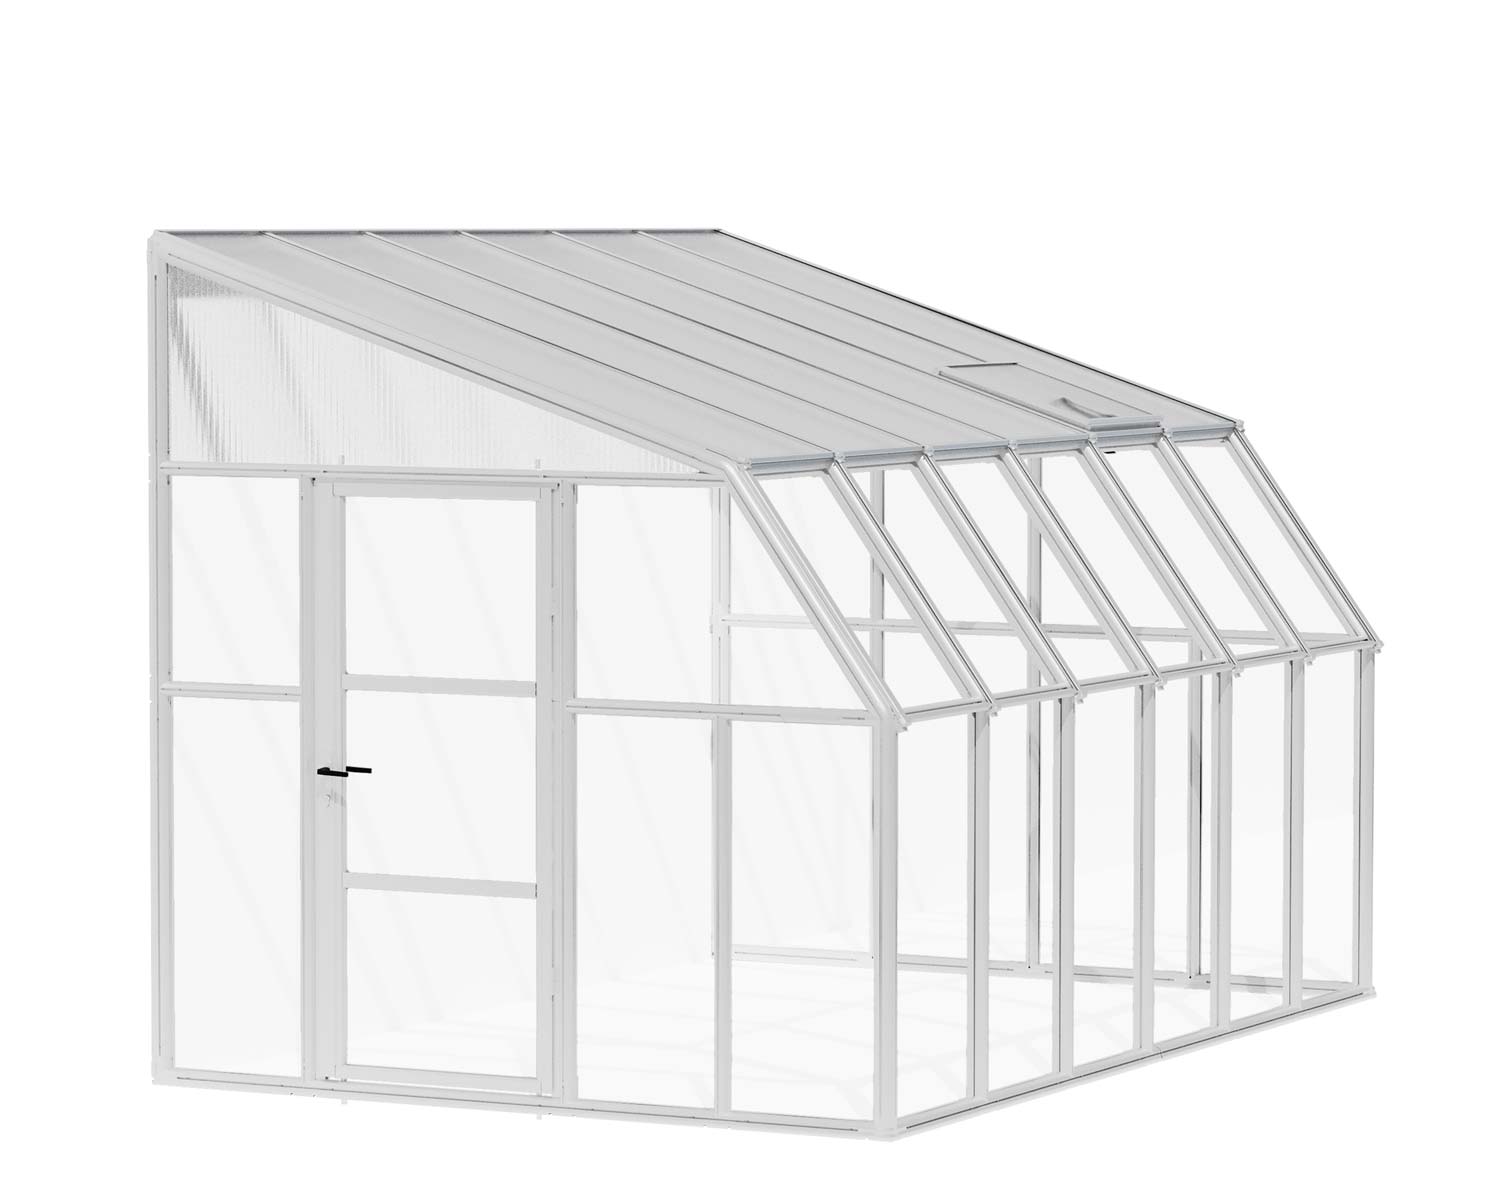 Solarium SunRoom Kit 8 ft. x 12 ft. White Structure & Hybrid Glazing